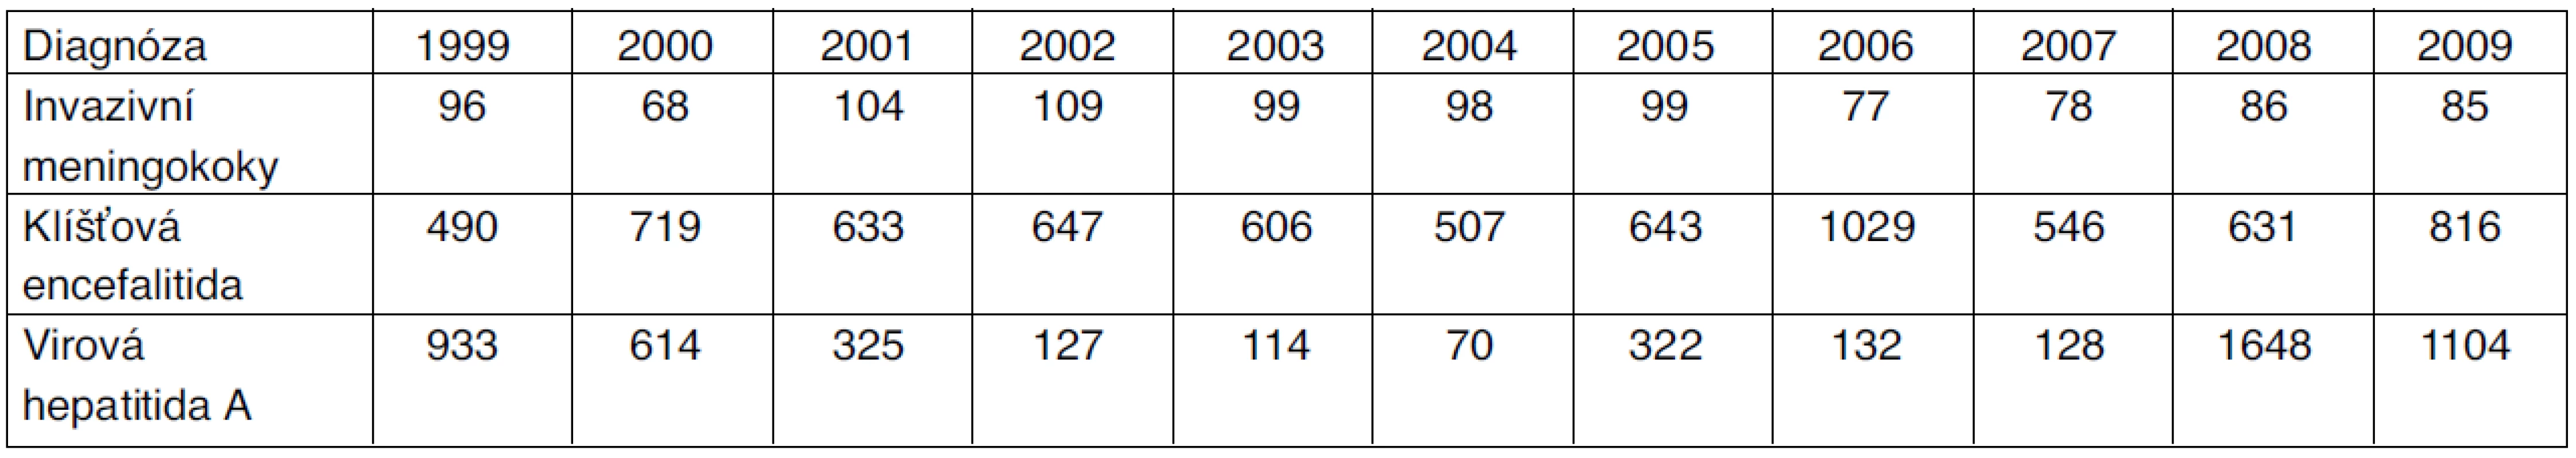 Počty hlášených případů infekčních onemocnění s možností preventivního očkování, Česká republika, 1999–2009